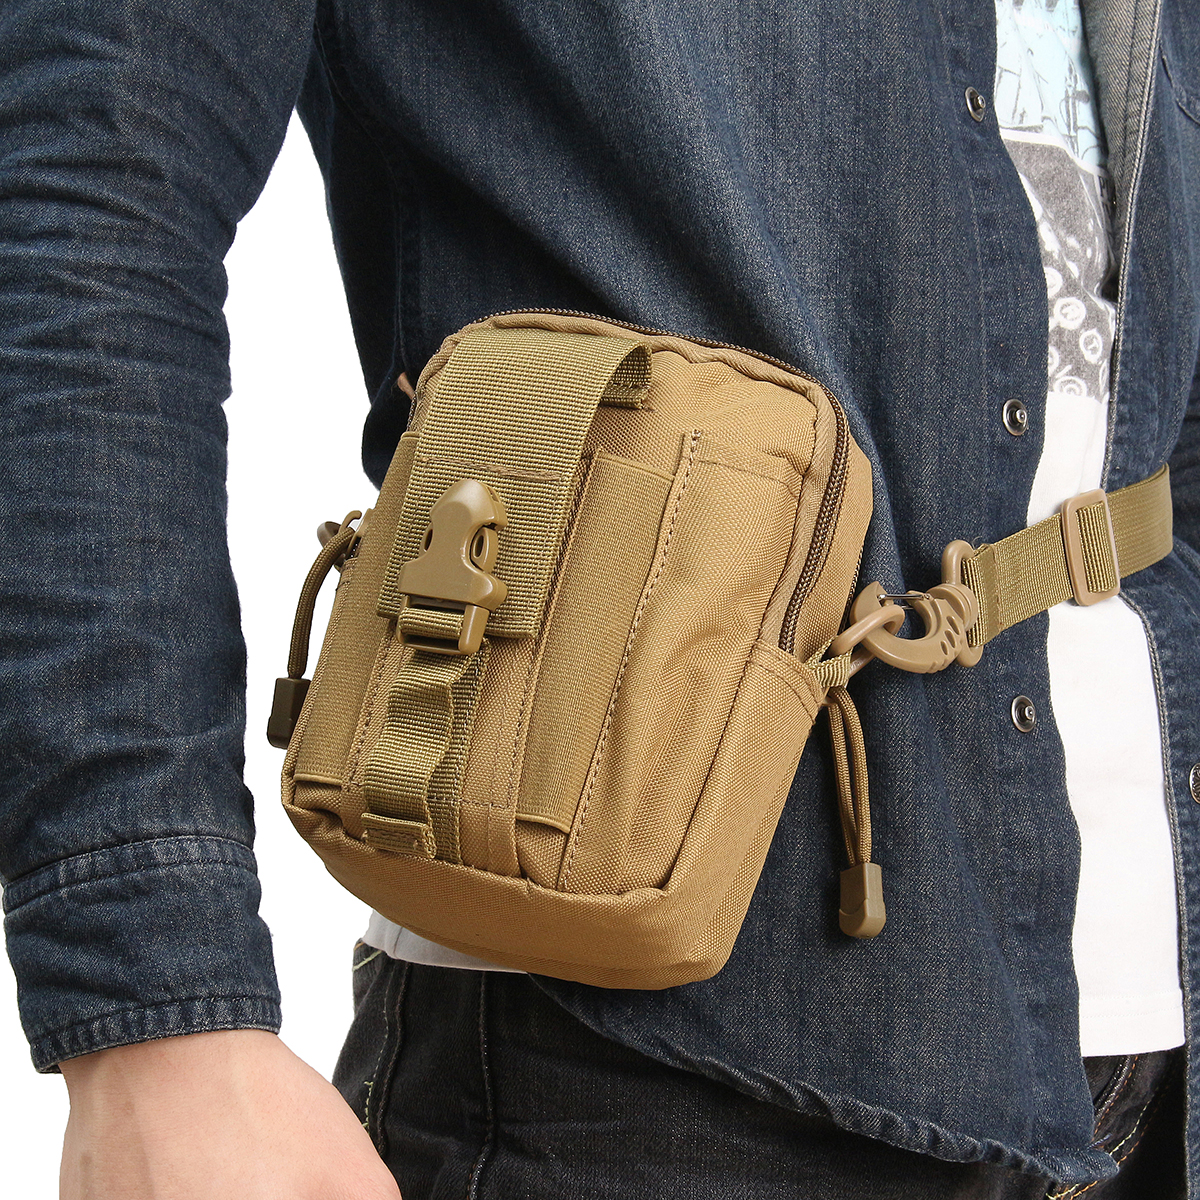 Waterproof-Tactical-Waist-Bag-Belt-Pouch-Hiking-Camp-Phone-Pocket-Waist-Shoulder-Bags-1817226-13